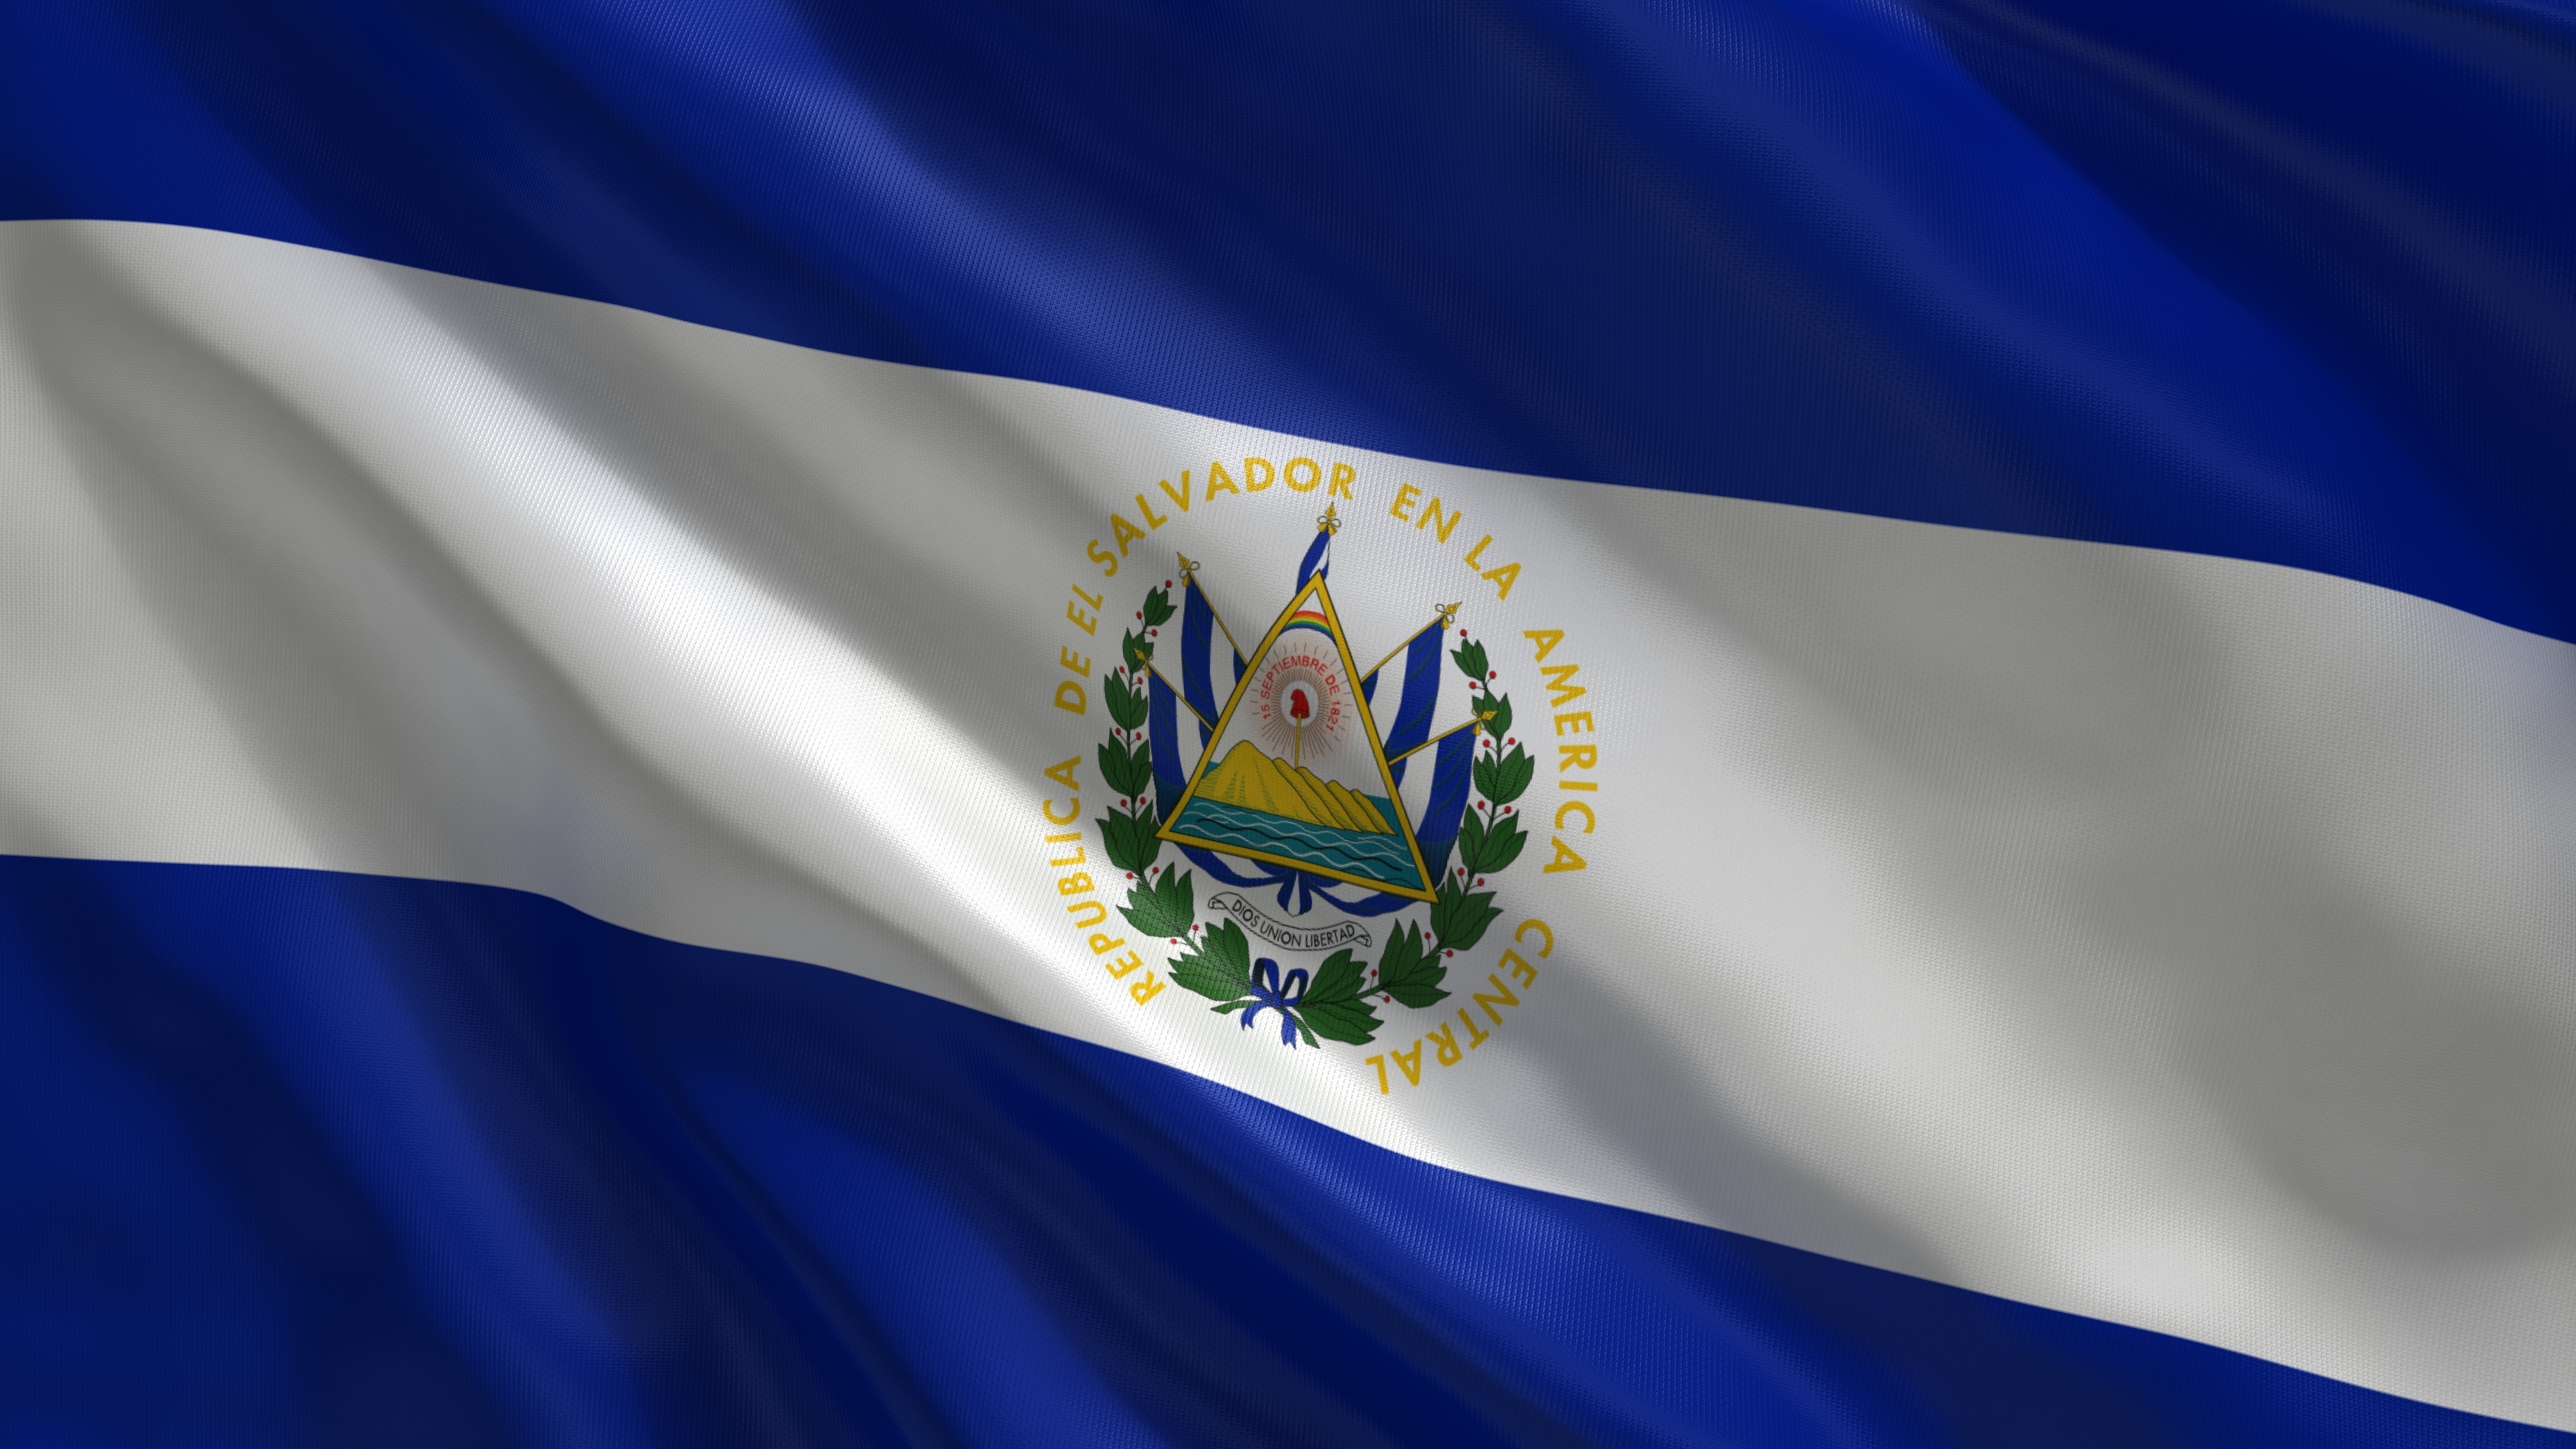 3840x2160, Grunge Flags El Salvador Wallpaper 
 Data - National El Salvador Flags - HD Wallpaper 